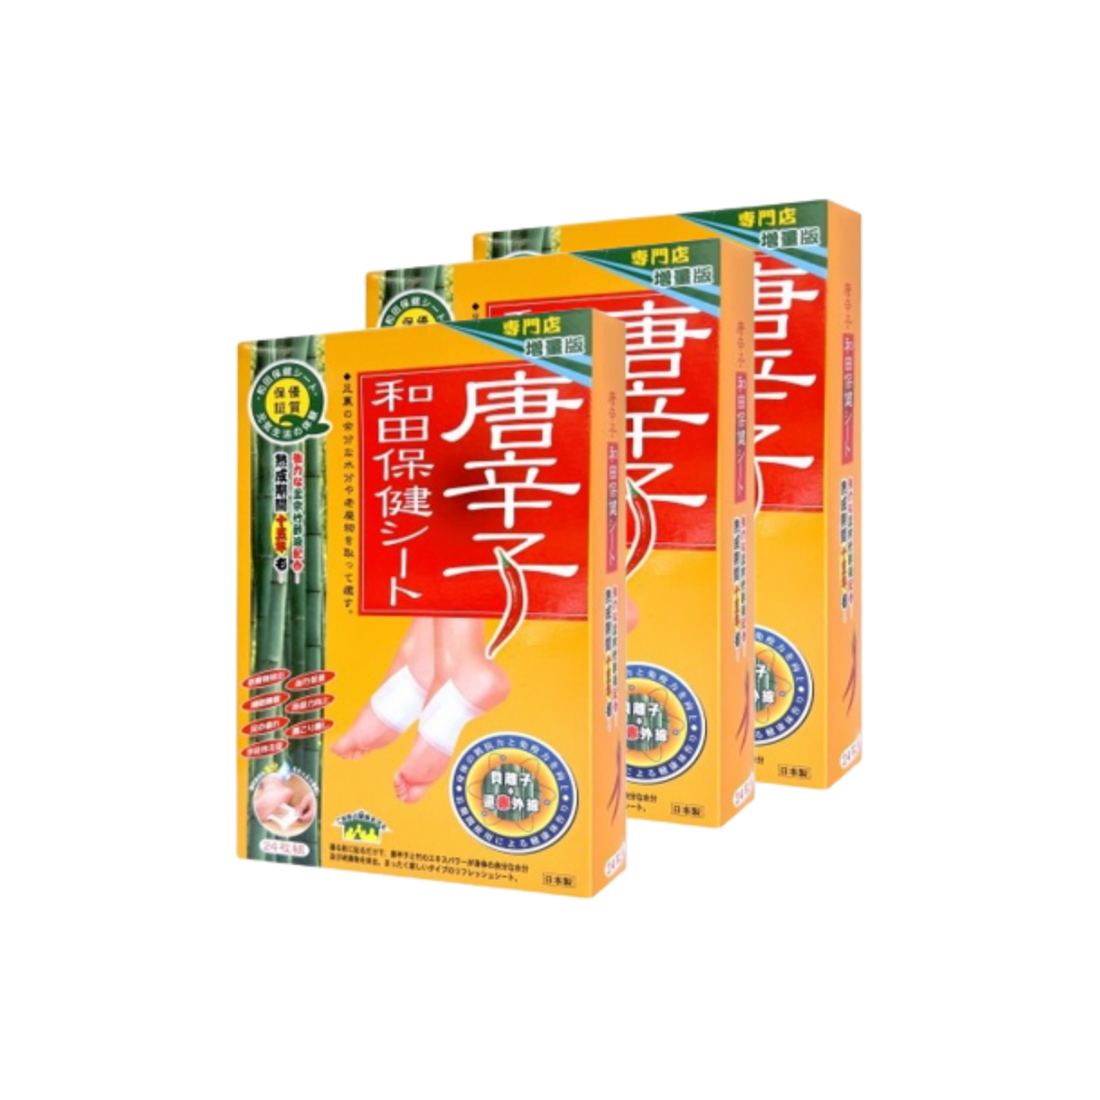 [3-box Set] Waton Chiku Saku Tape (24 pcs)